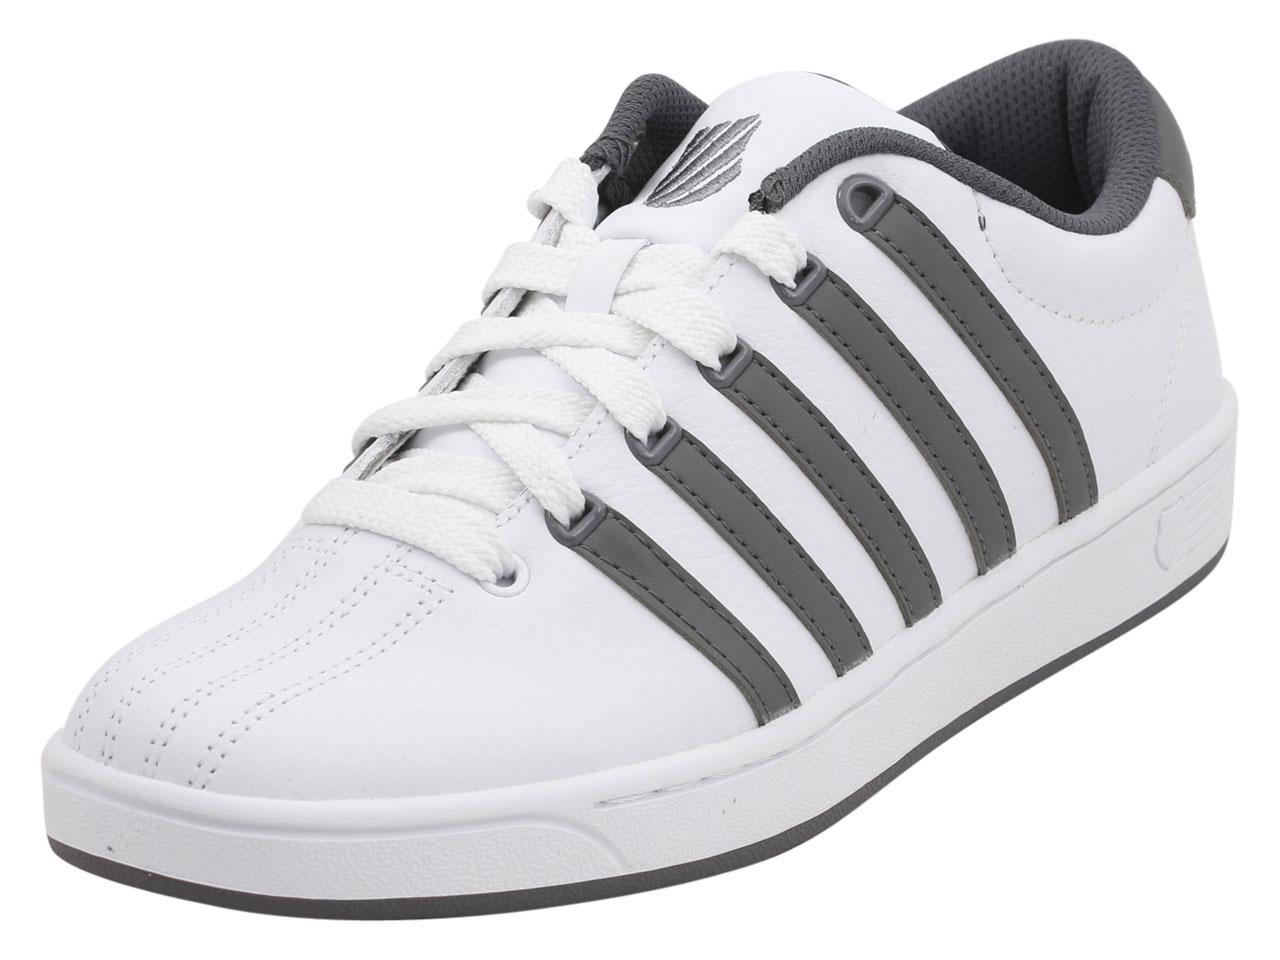 K Swiss Men's Court Pro II CMF Memory Foam Sneakers Shoes - White/Charcoal/White - 11.5 D(M) US -  K-Swiss